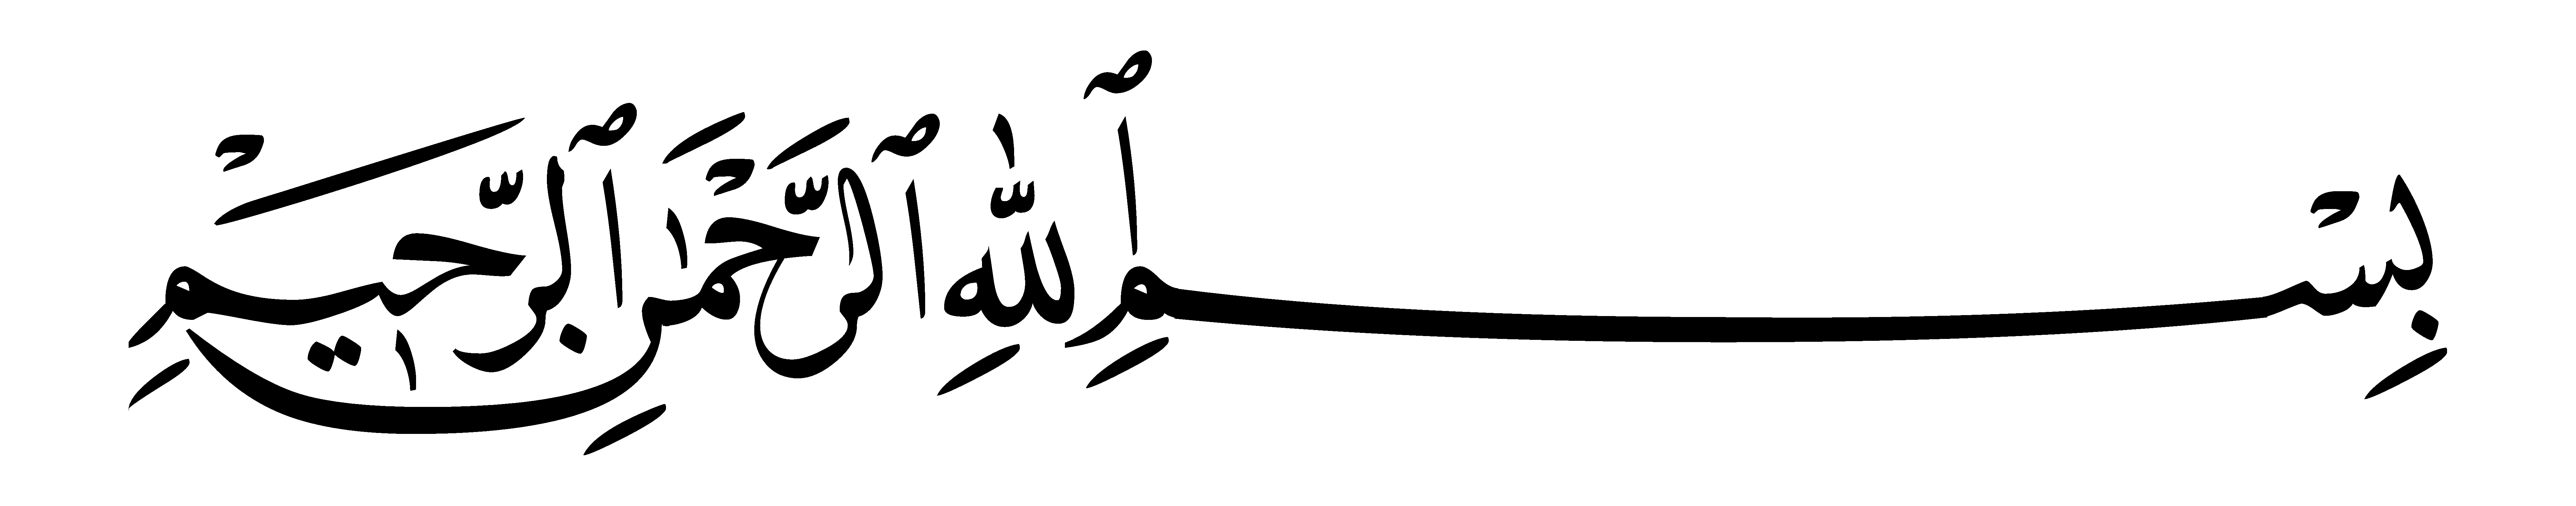 Bismillah Calligraphy Png